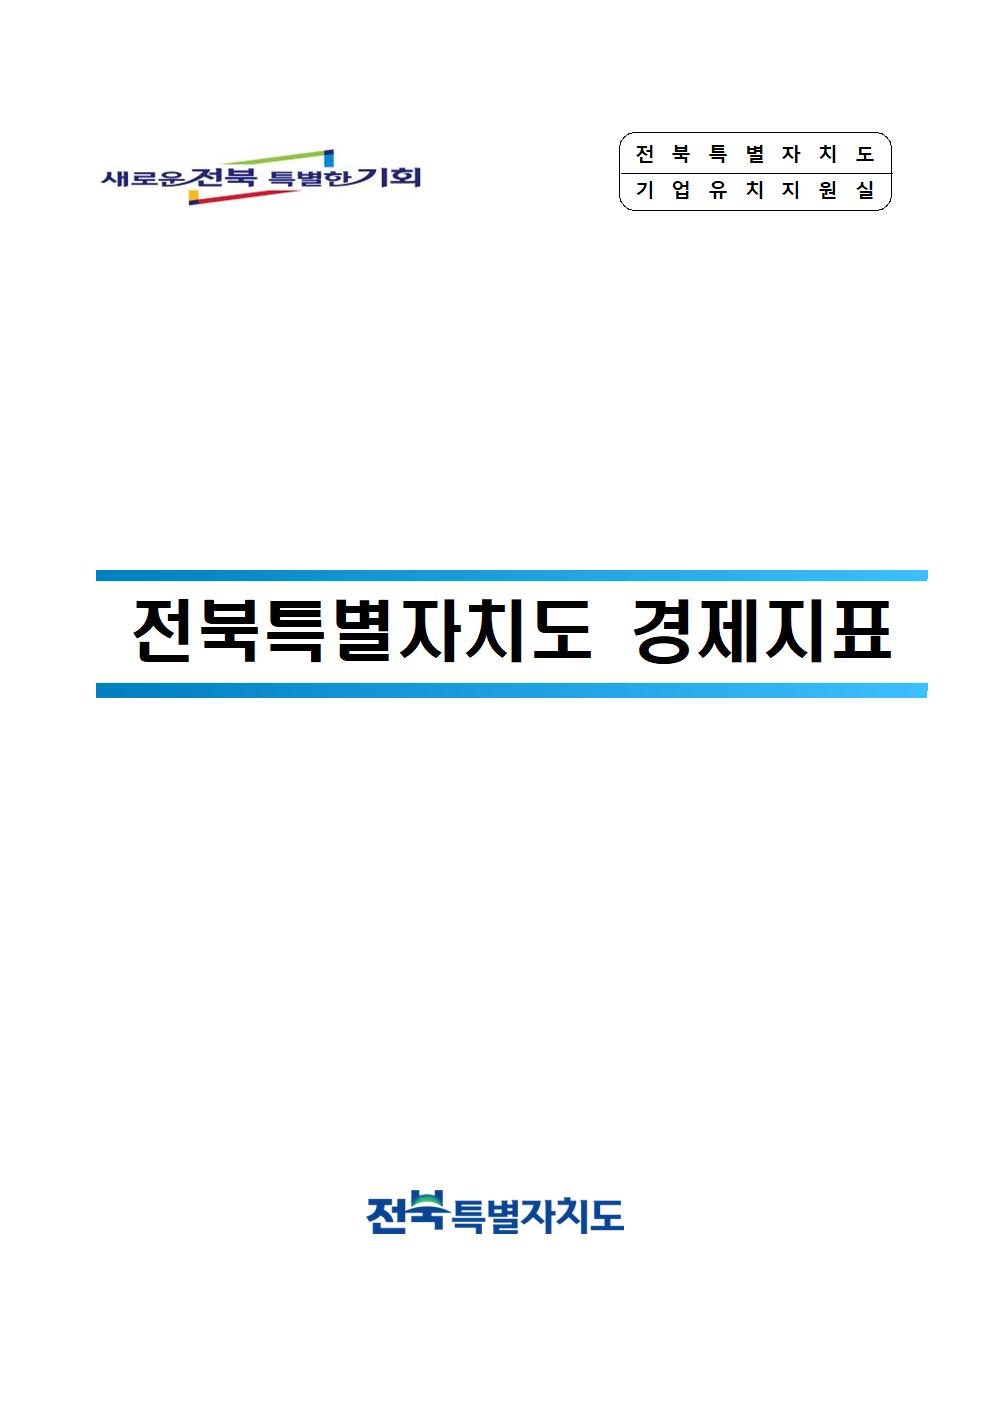 전북특별자치도 공공요금 (24. 3월) 1번째 이미지